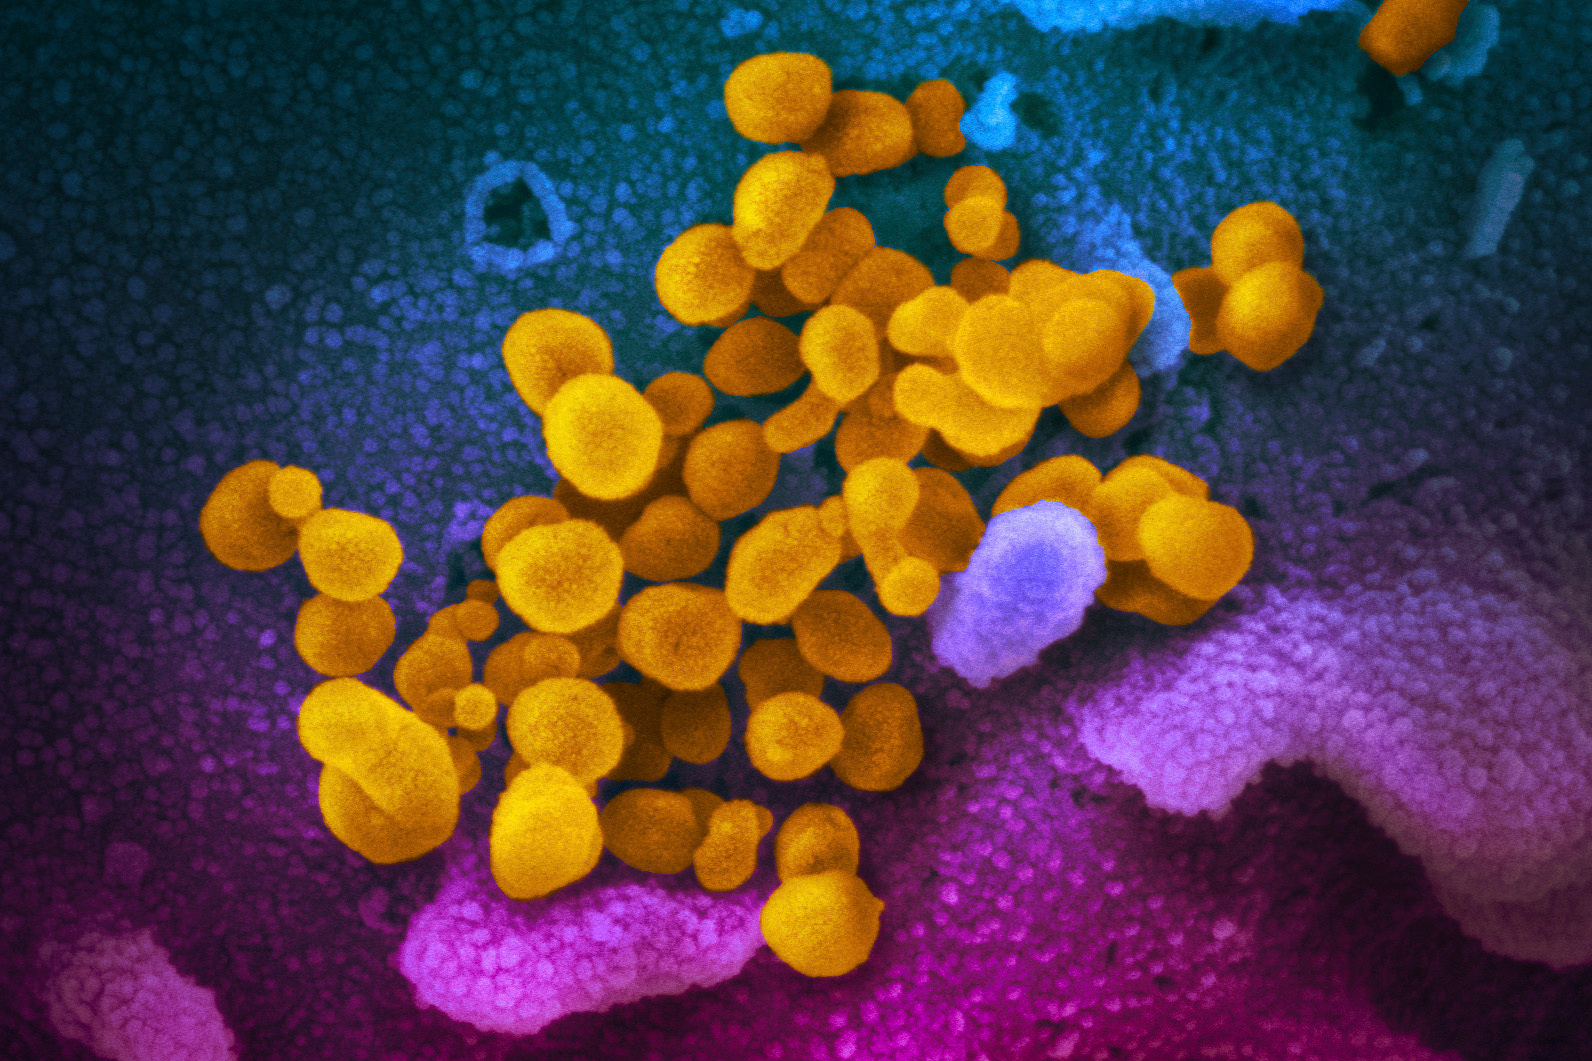 Microscopic image of coronavirus